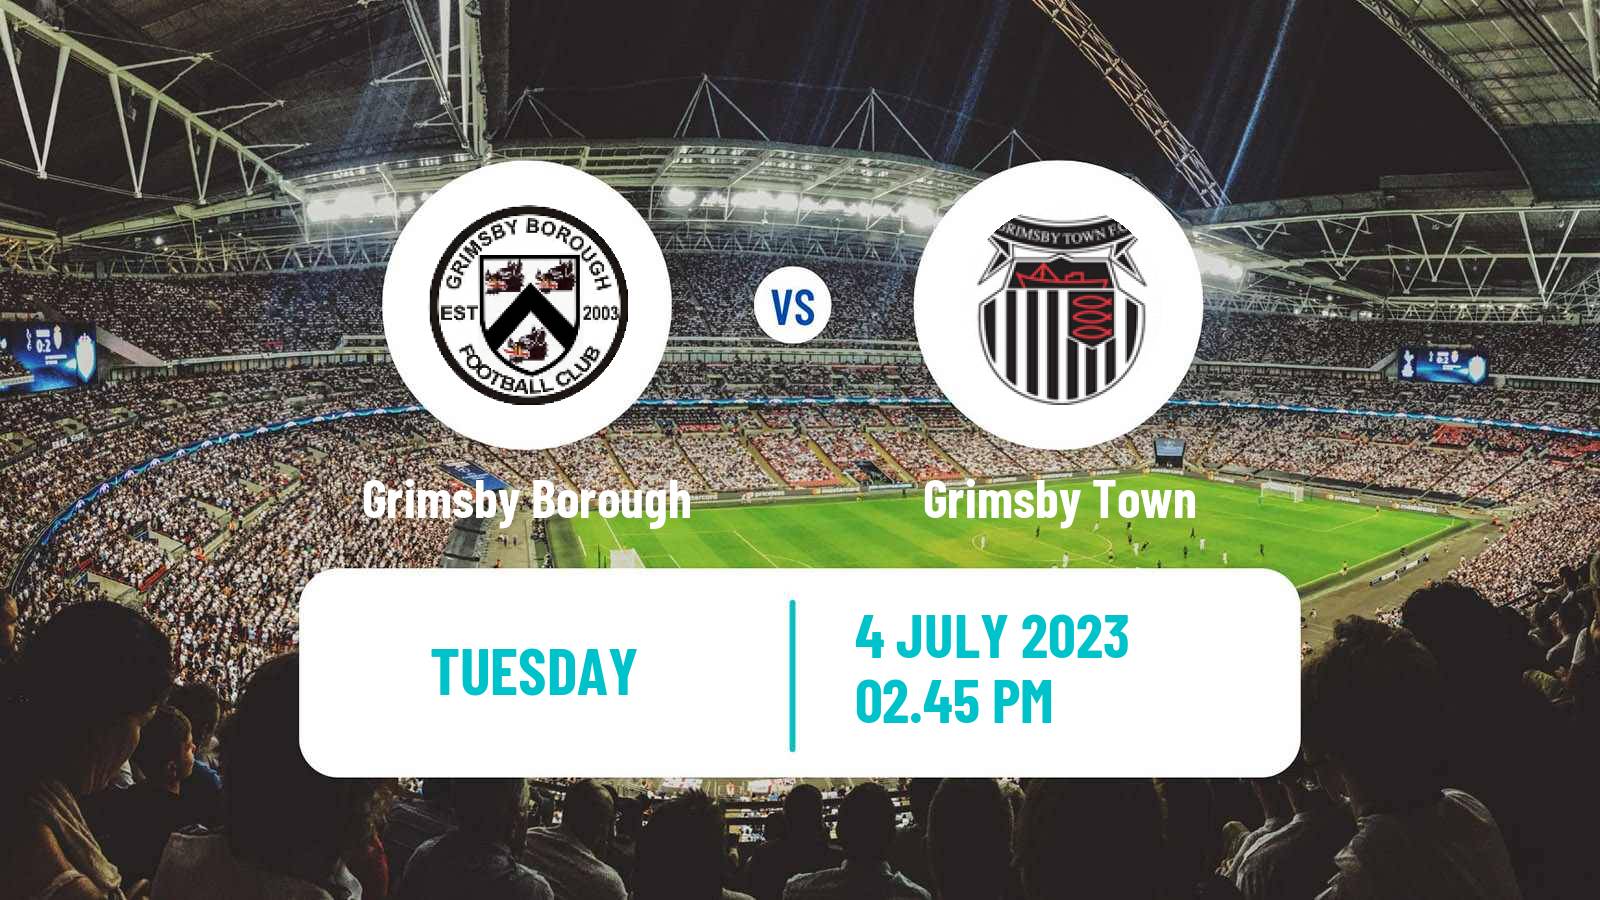 Soccer Club Friendly Grimsby Borough - Grimsby Town